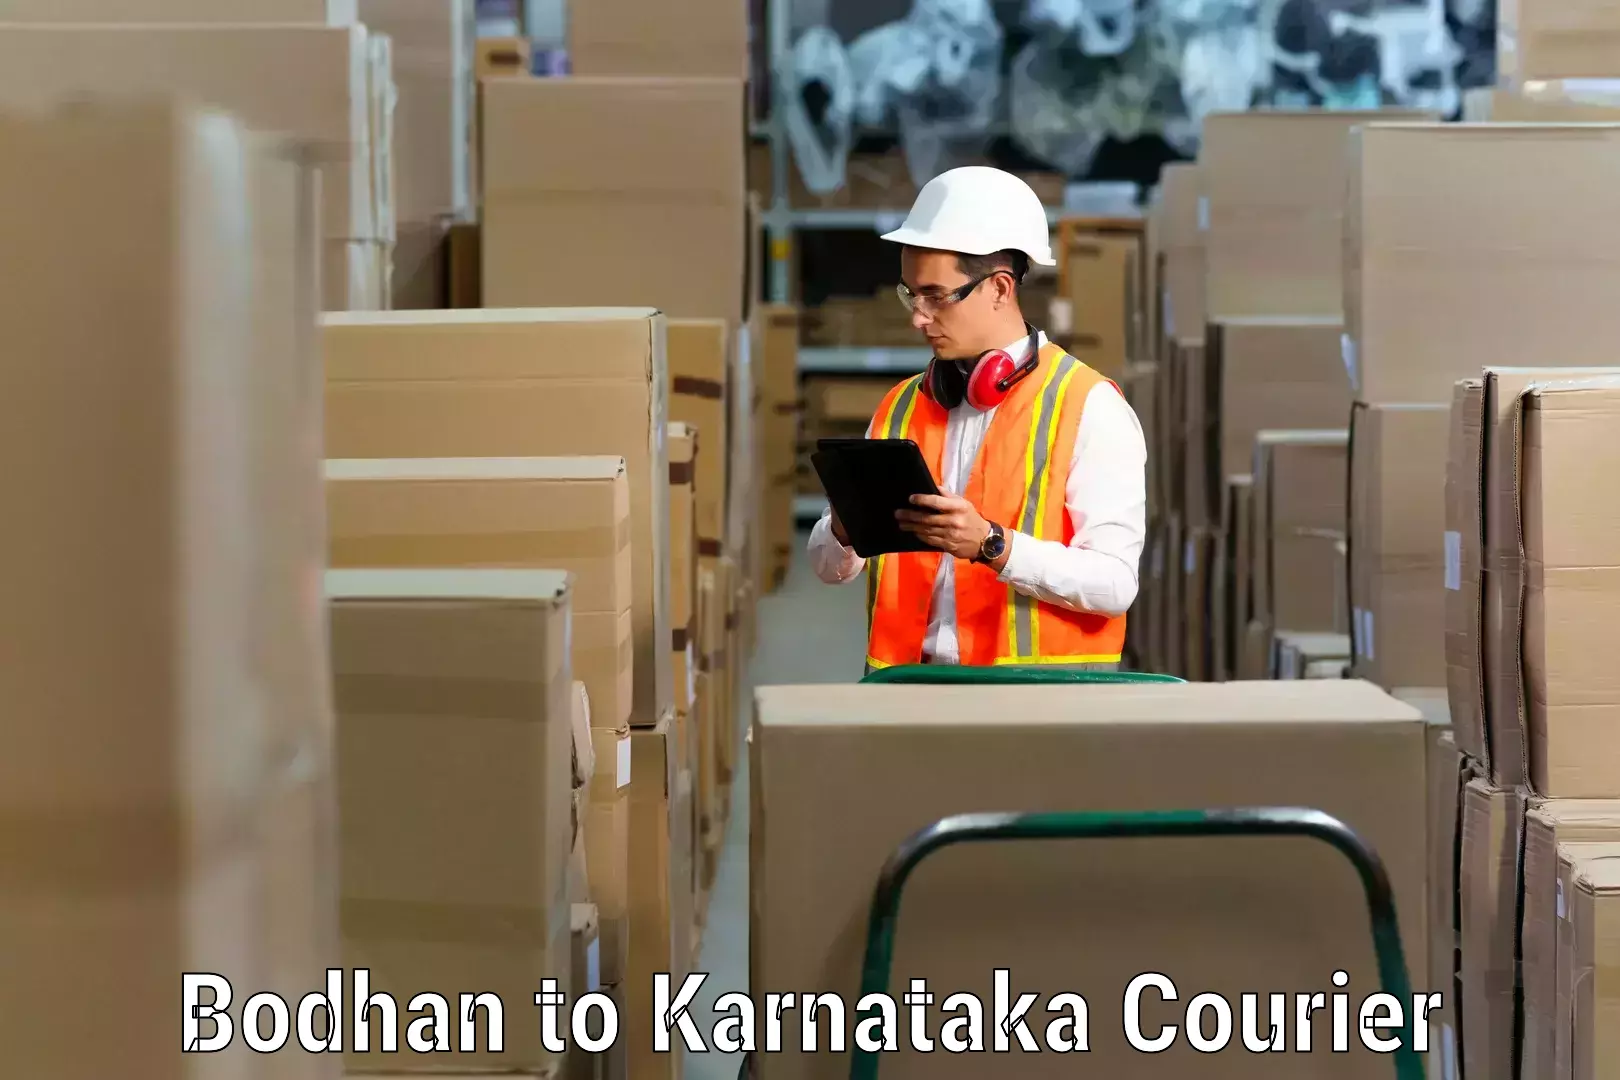 Furniture transport experts Bodhan to Jamkhandi